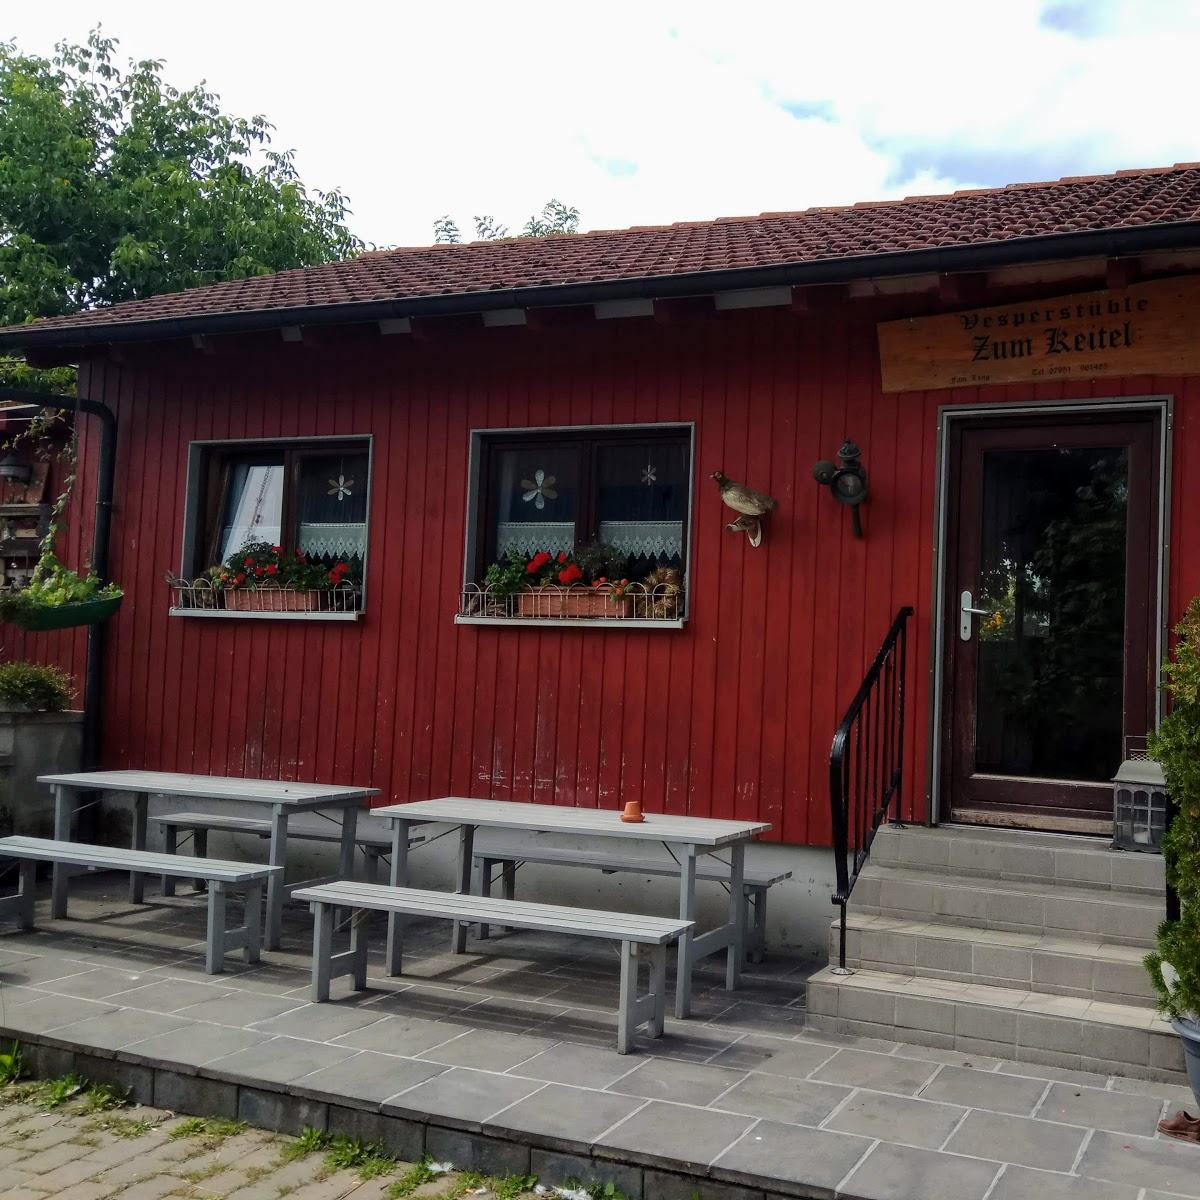 Restaurant "Vesperstüble Zum Keitel" in Satteldorf